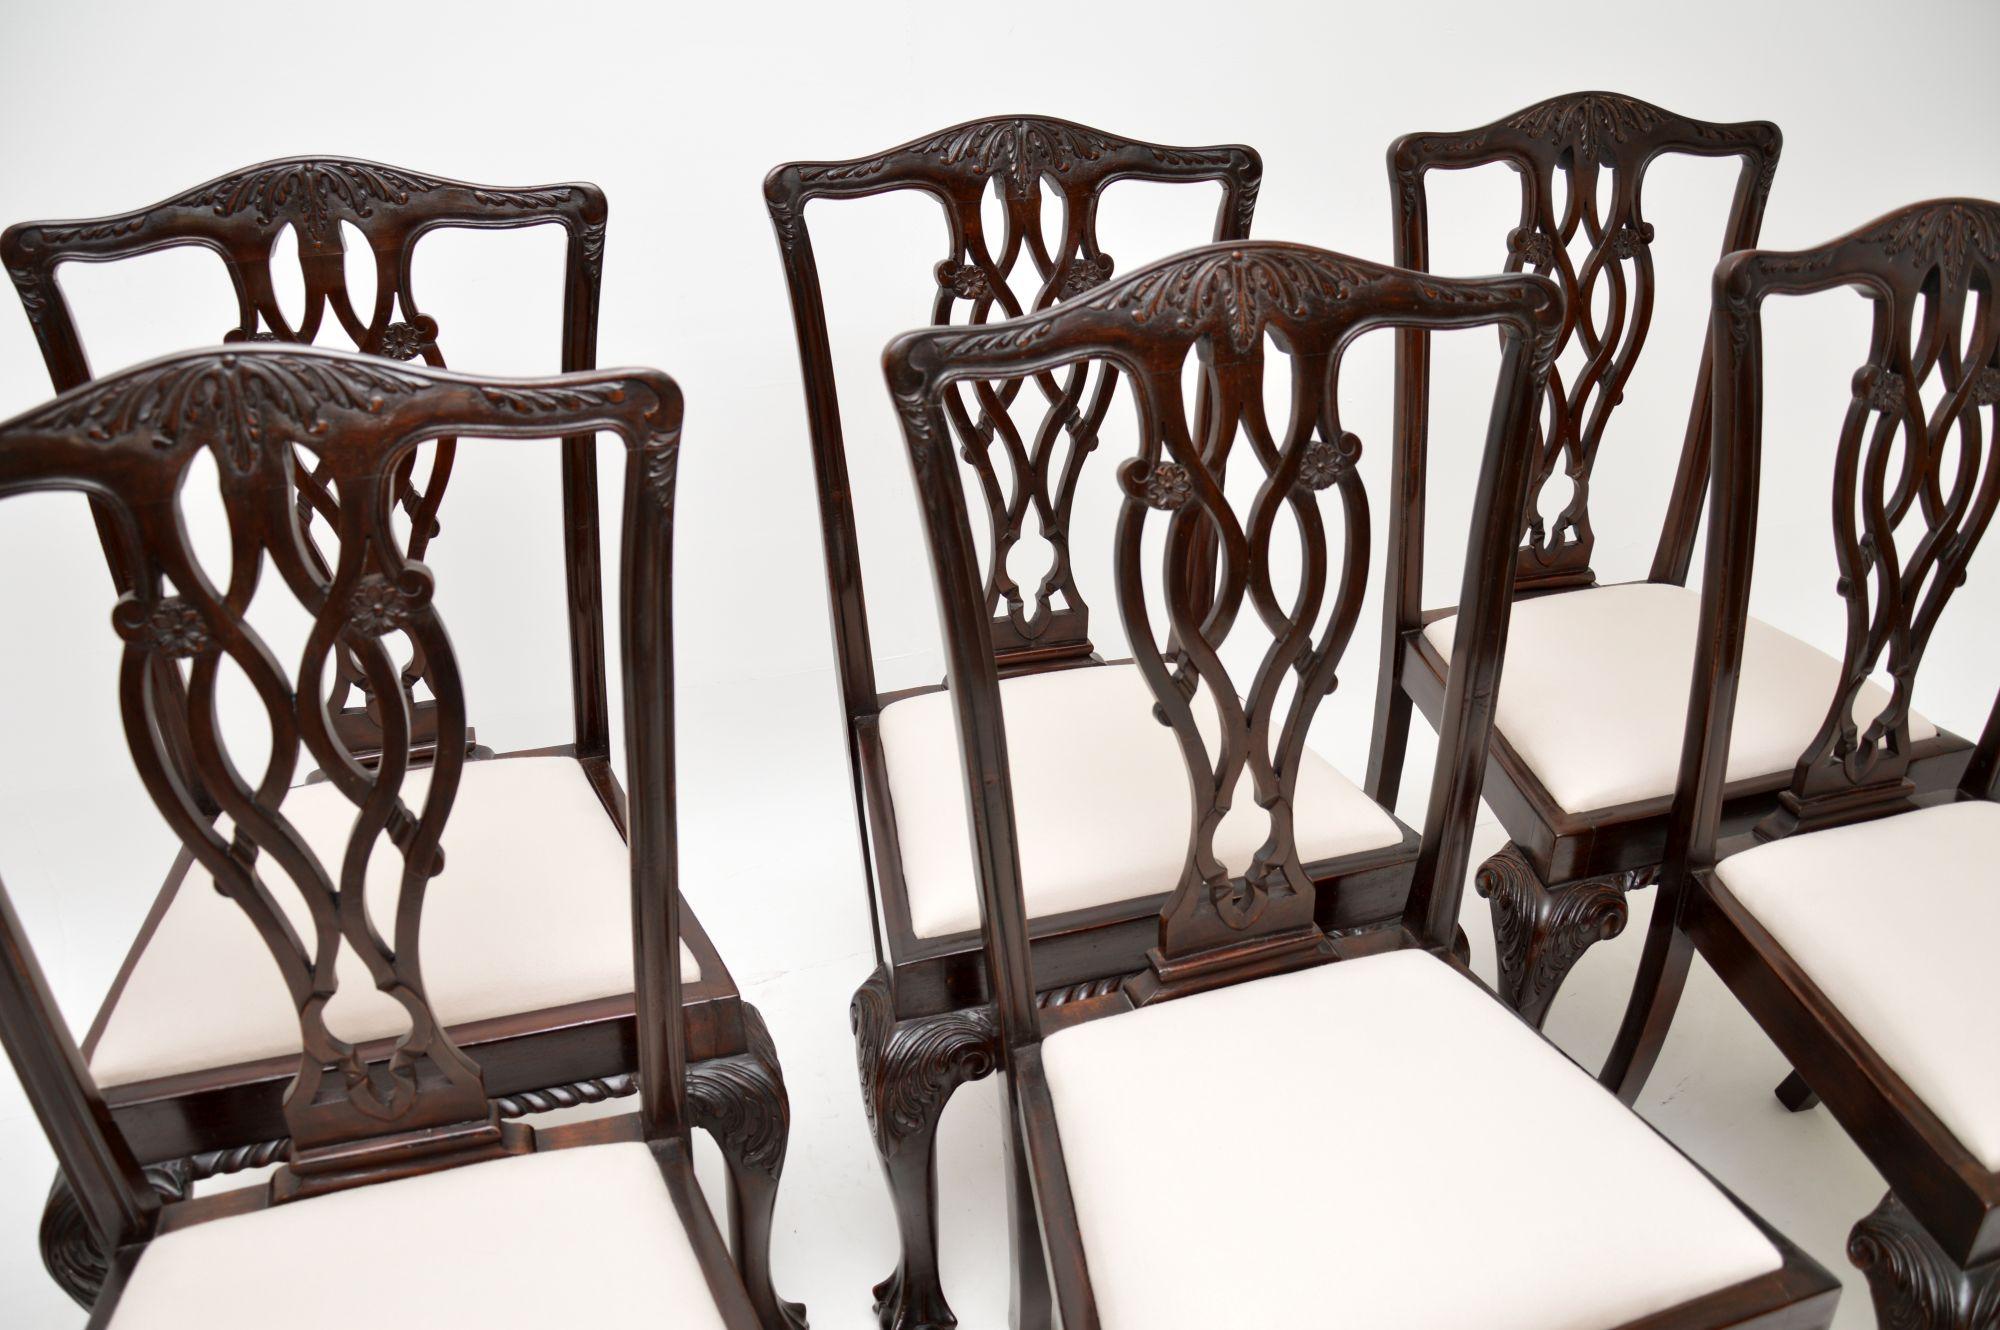 Ein ausgezeichneter Satz antiker Esszimmerstühle im klassischen Chippendale-Stil. Sie wurden in England hergestellt und stammen etwa aus der Zeit von 1890 bis 1910.

Die Qualität ist hervorragend, sie sind sehr robust und gut verarbeitet. Die